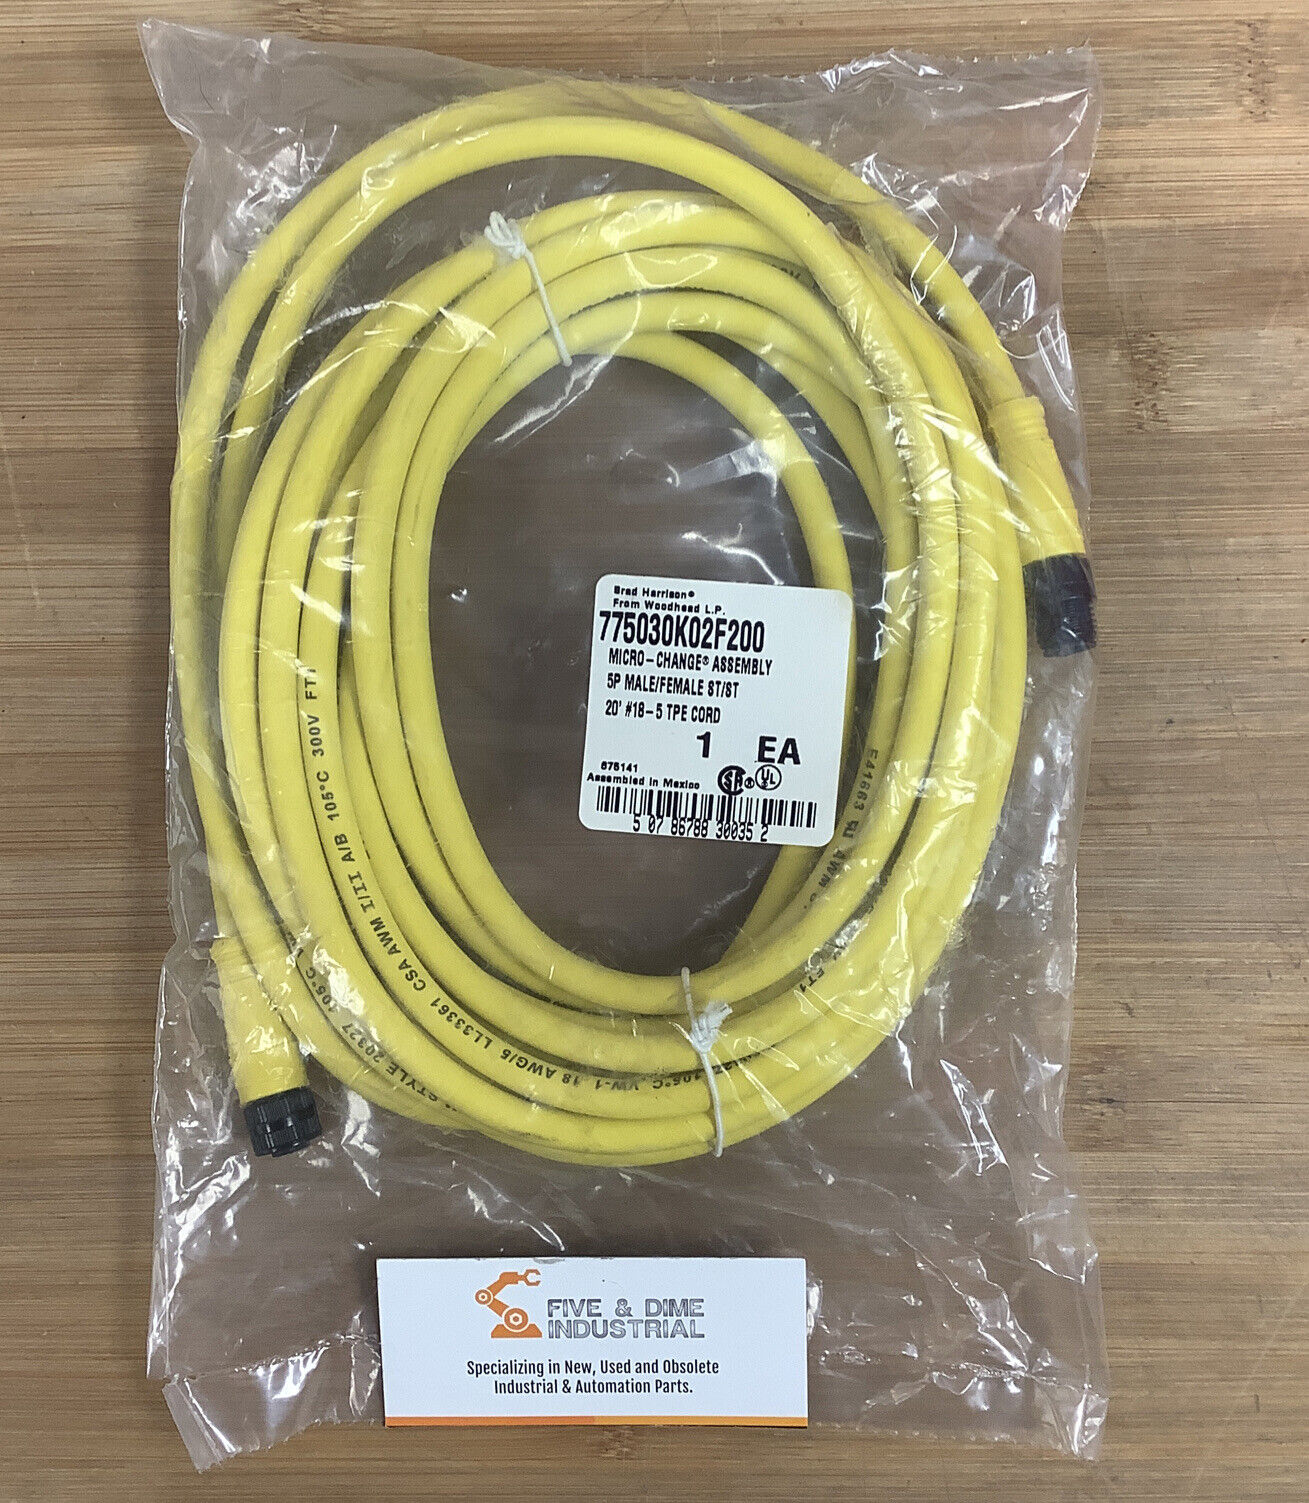 Brad Harrison / Woodhead 775030K02F200 New 5P M/FM 20' ST/ST #18 Cable (CBL122)